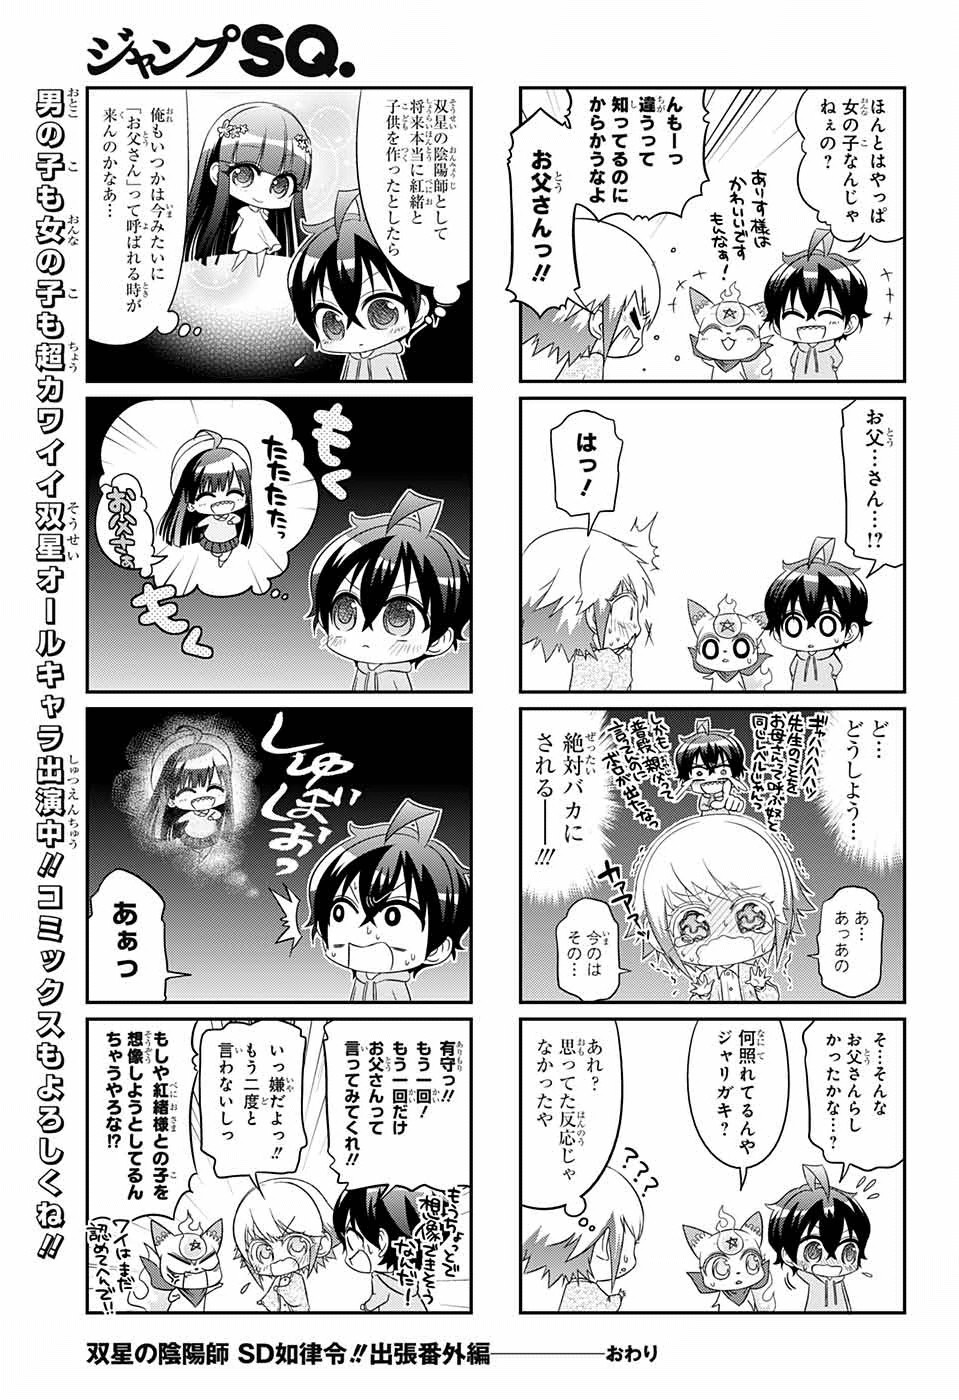 Sousei no Onmyouji - Chapter 41.5 - Page 4